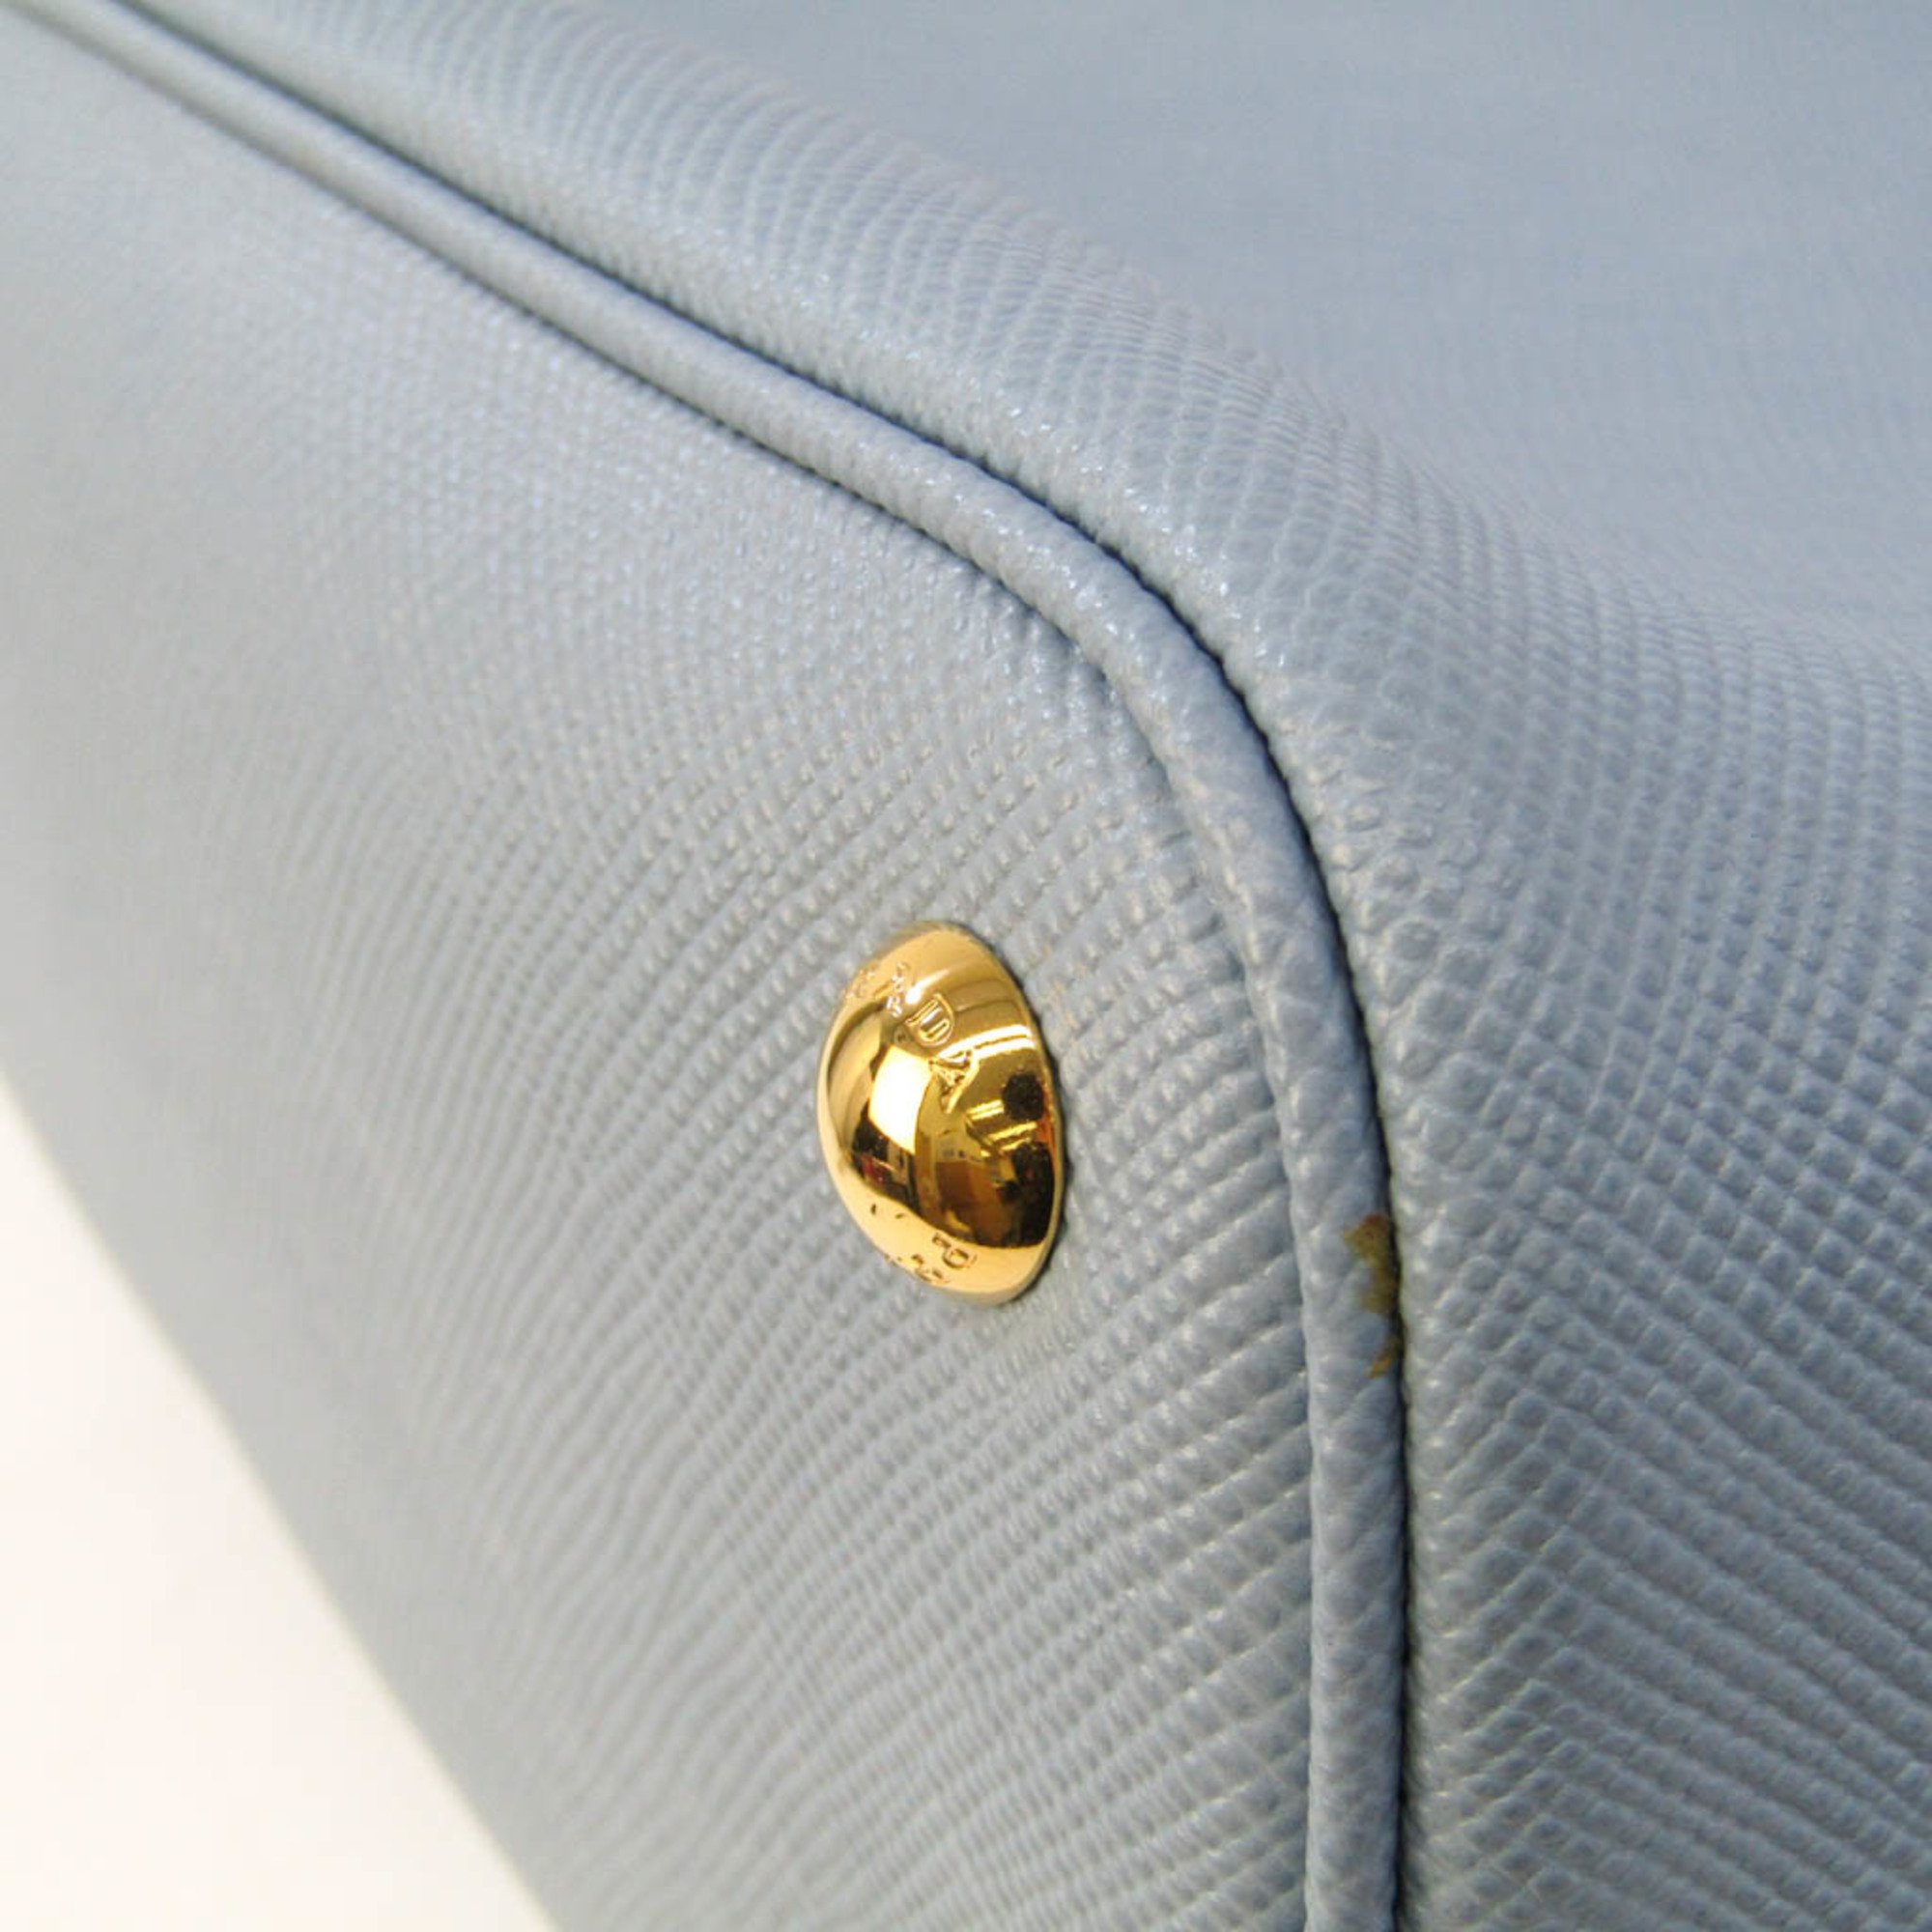 Prada Doubre Small Bag 1BG887 Women's Saffiano Cuir Handbag,Shoulder Bag Light Blue